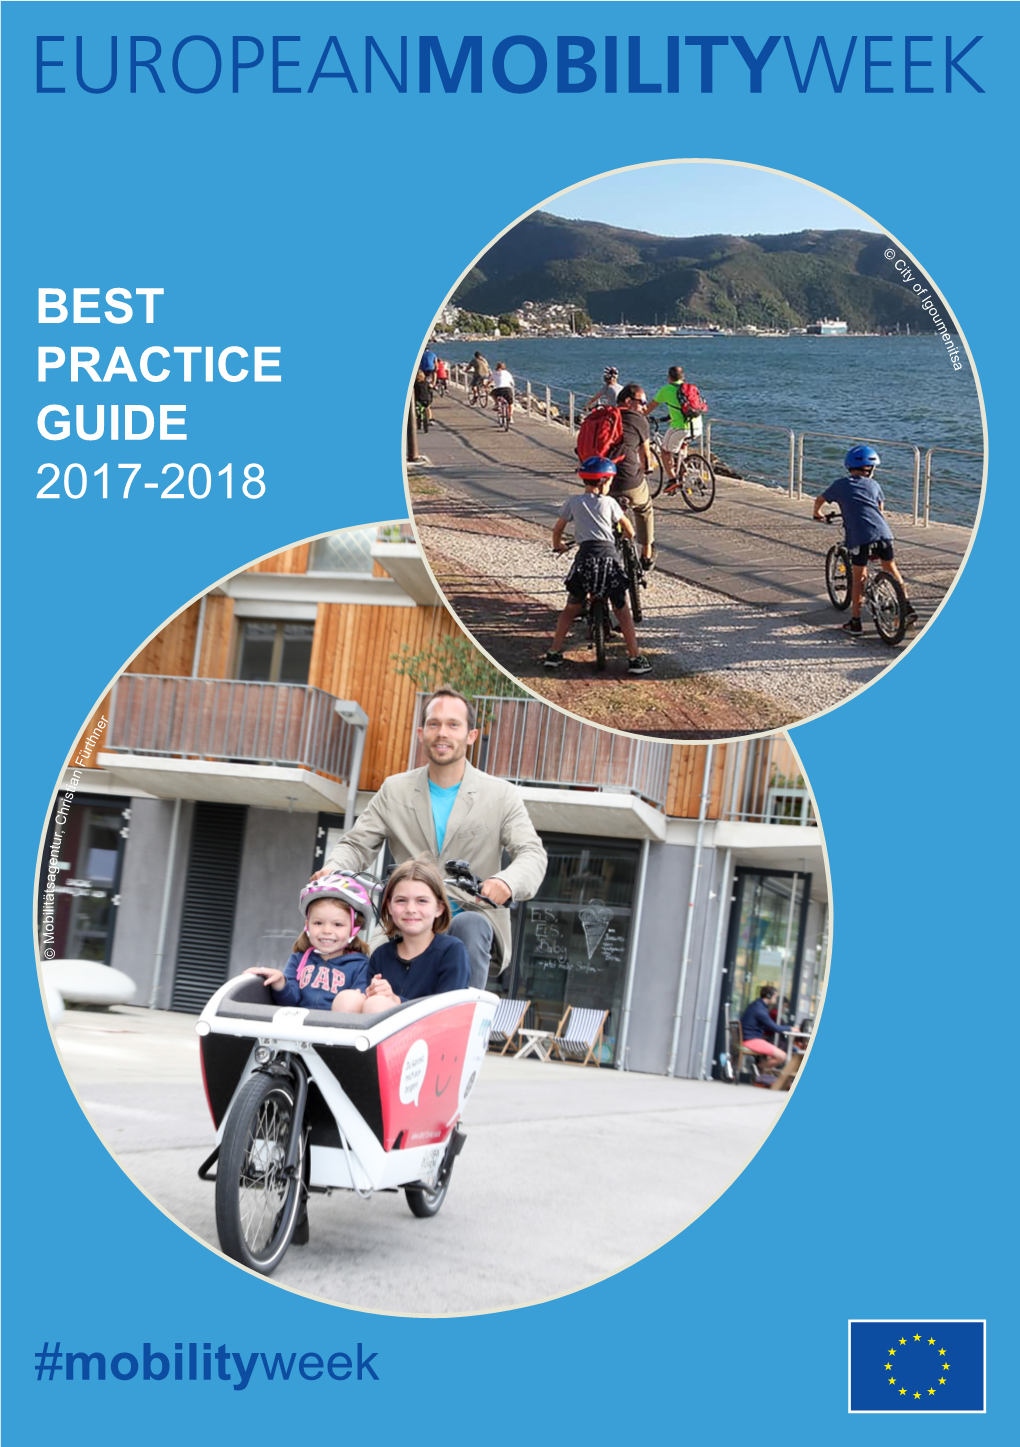 Best Practice Guide 2017-2018